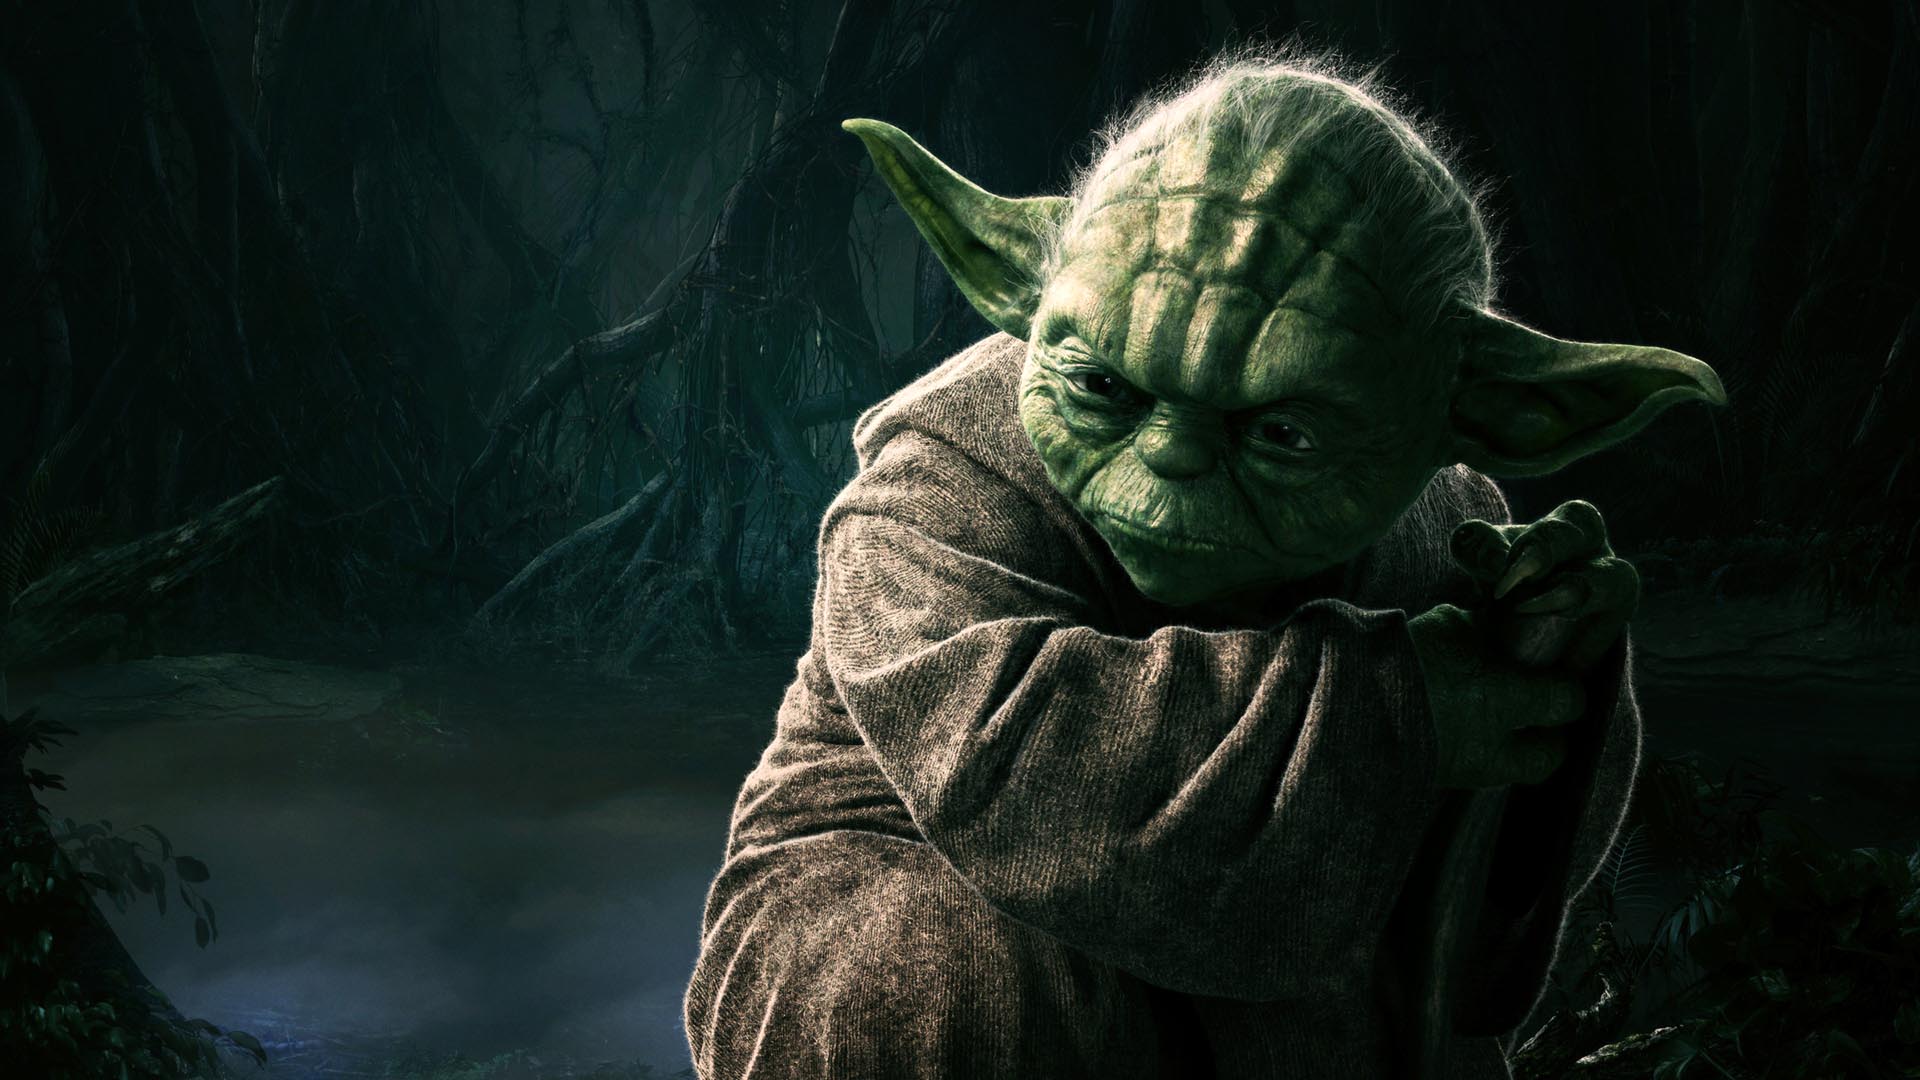 Star Wars Yoda HD Wallpaper FullHDwpp Full